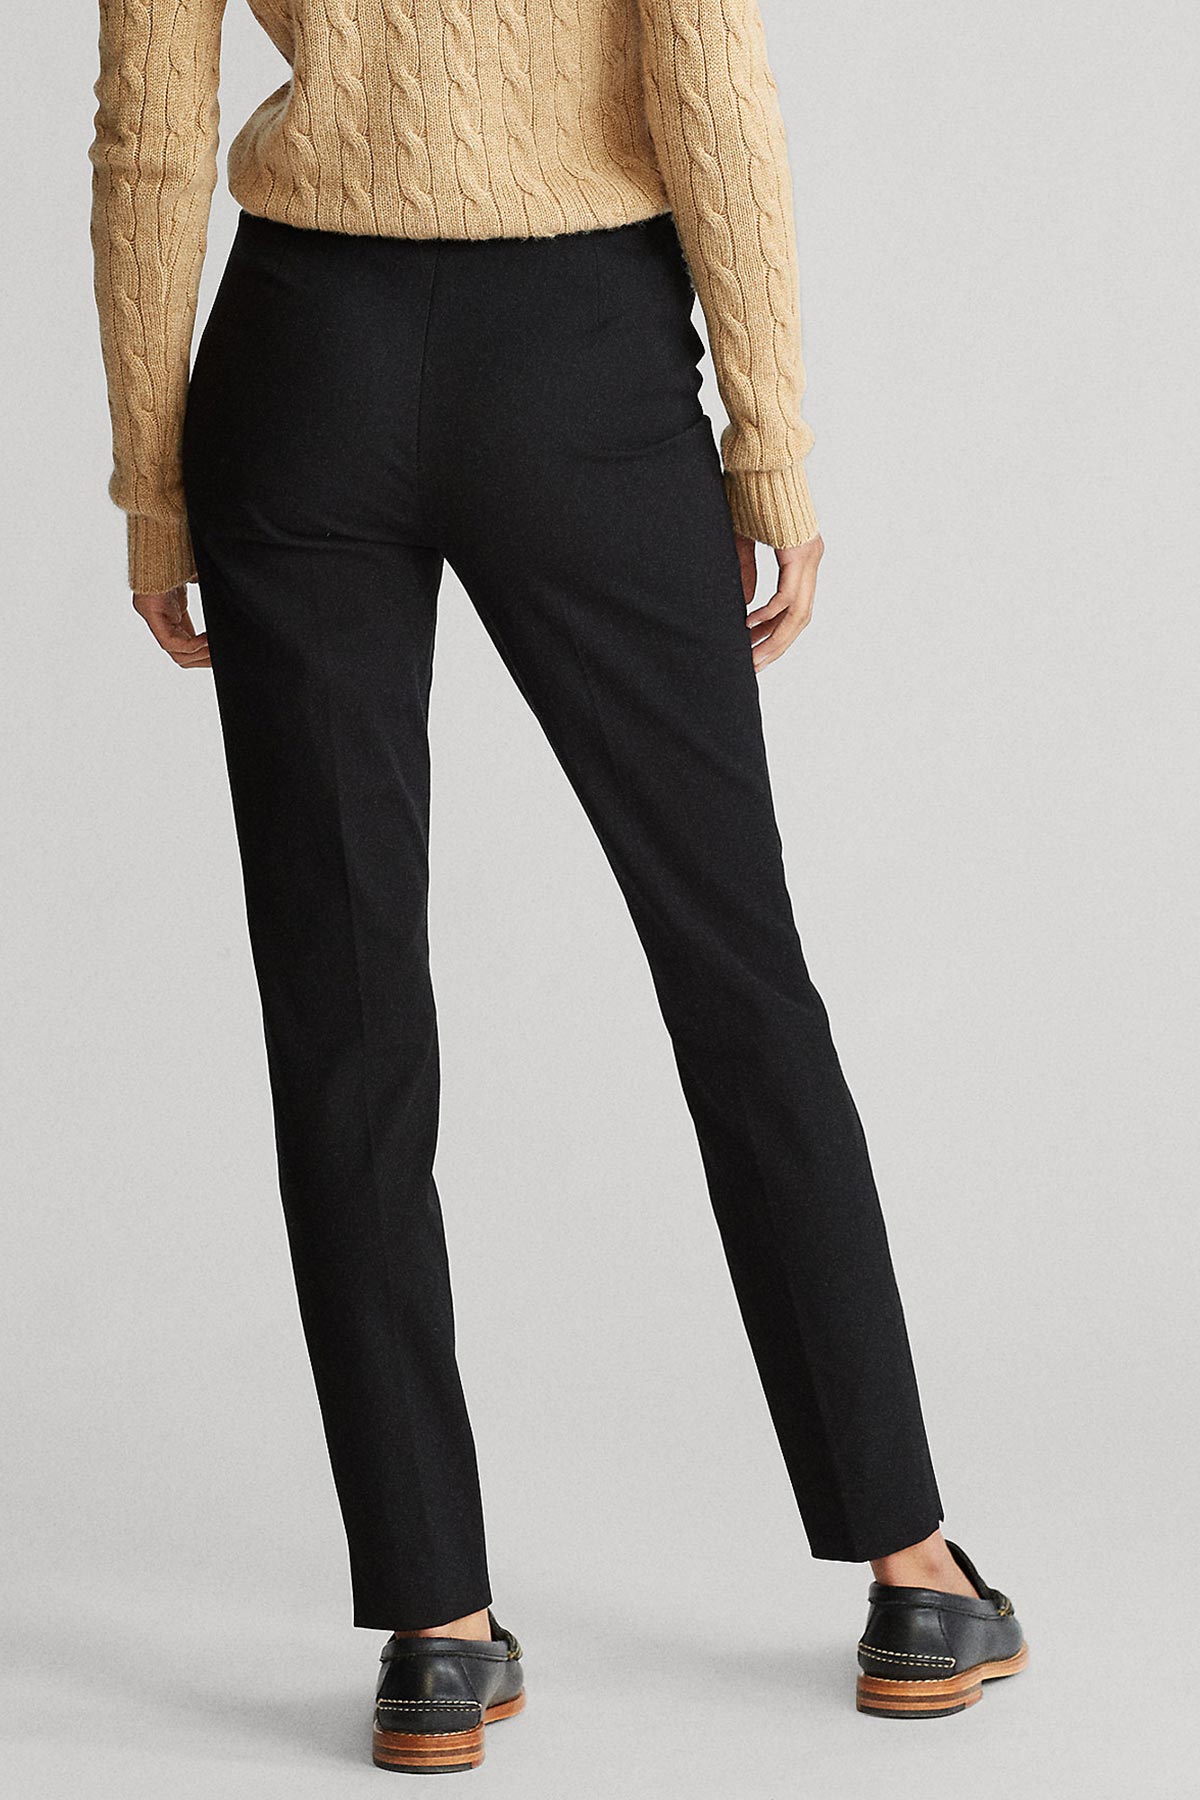 Polo Ralph Lauren Bi Stretch Skinny Pantolon-Libas Trendy Fashion Store